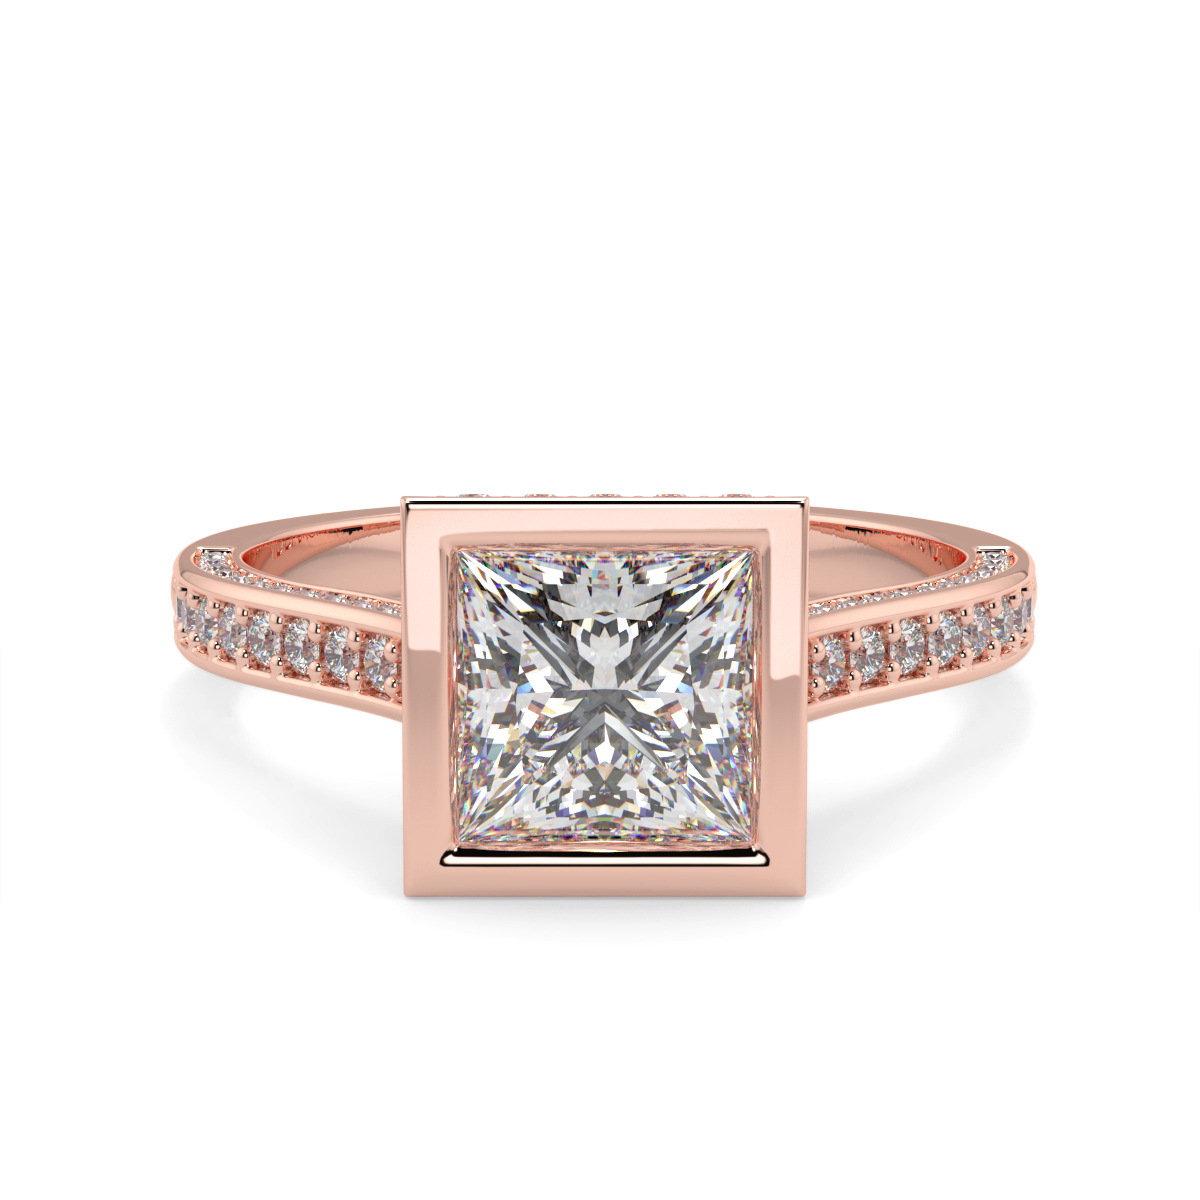 Princess Pave Set Rubover Diamond Ring